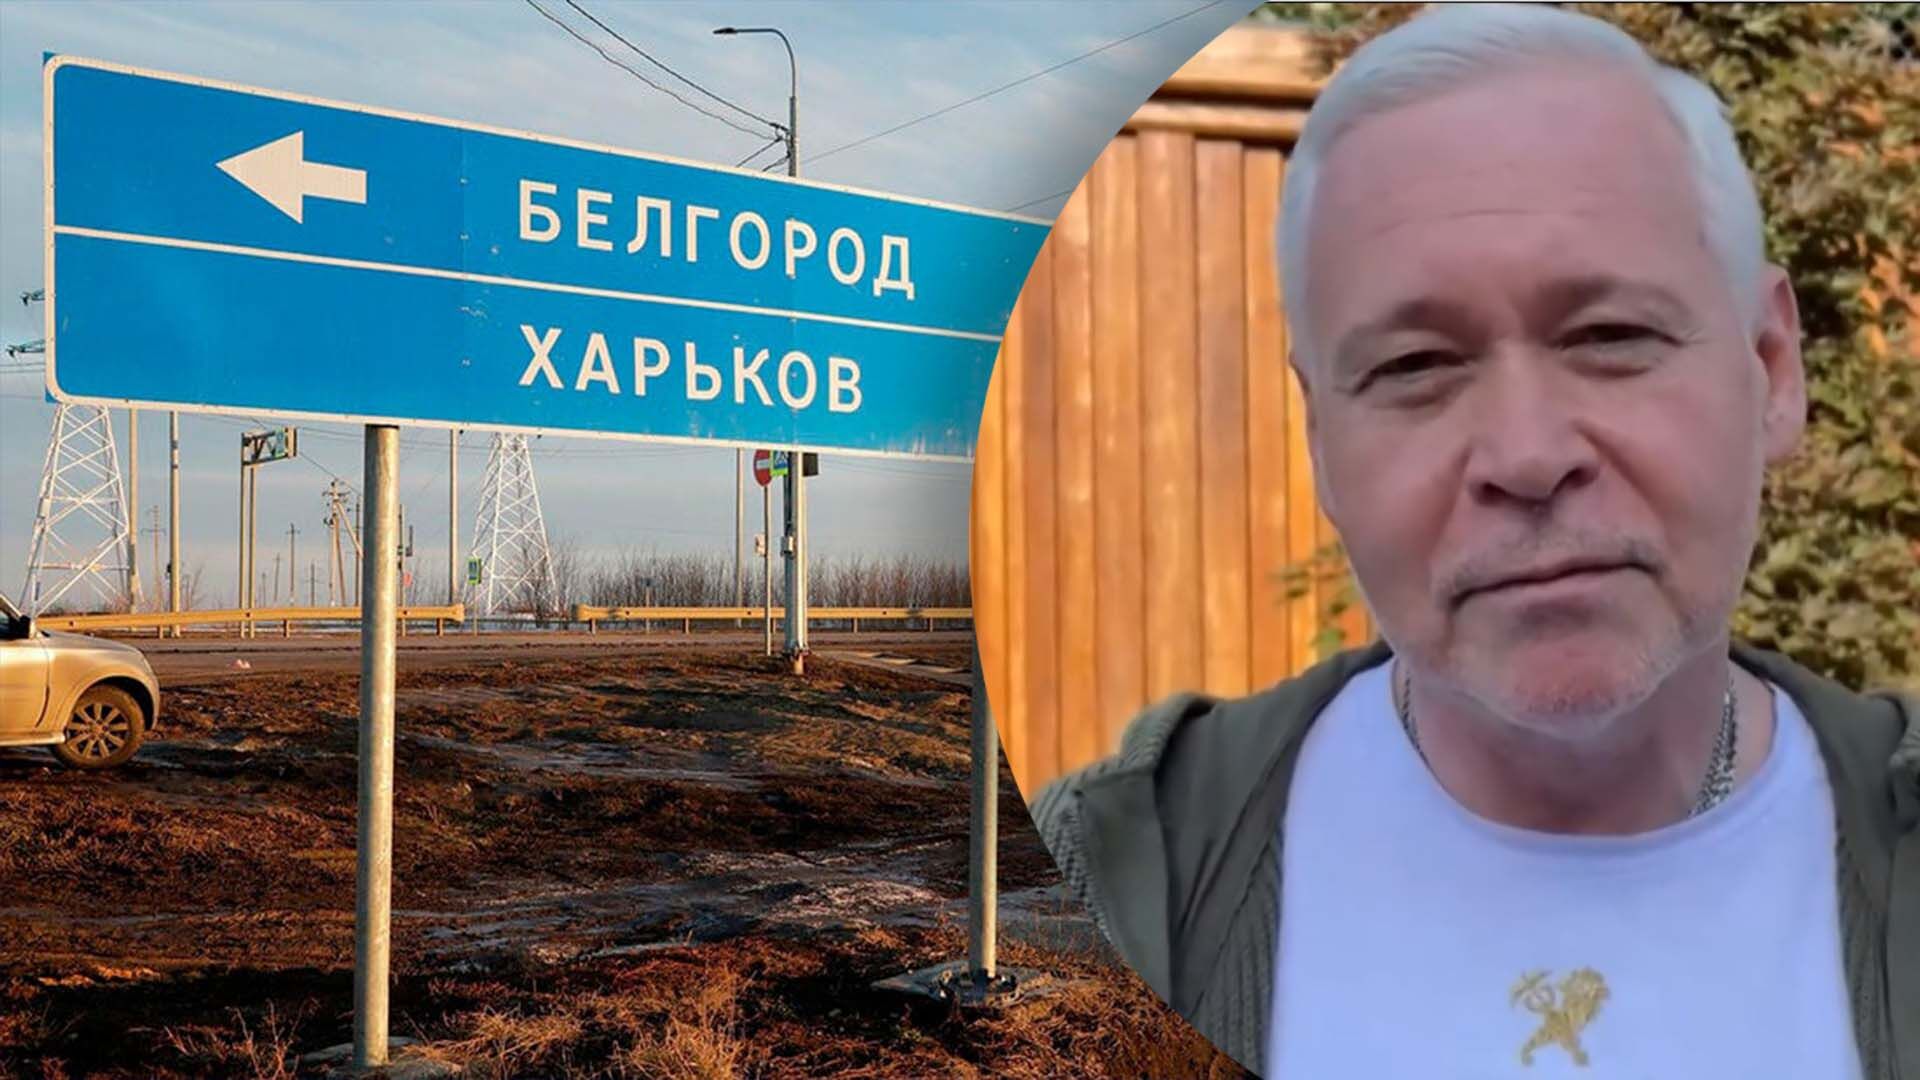 Как ответил мэр Харькова на заявления губернатора Белгородщины